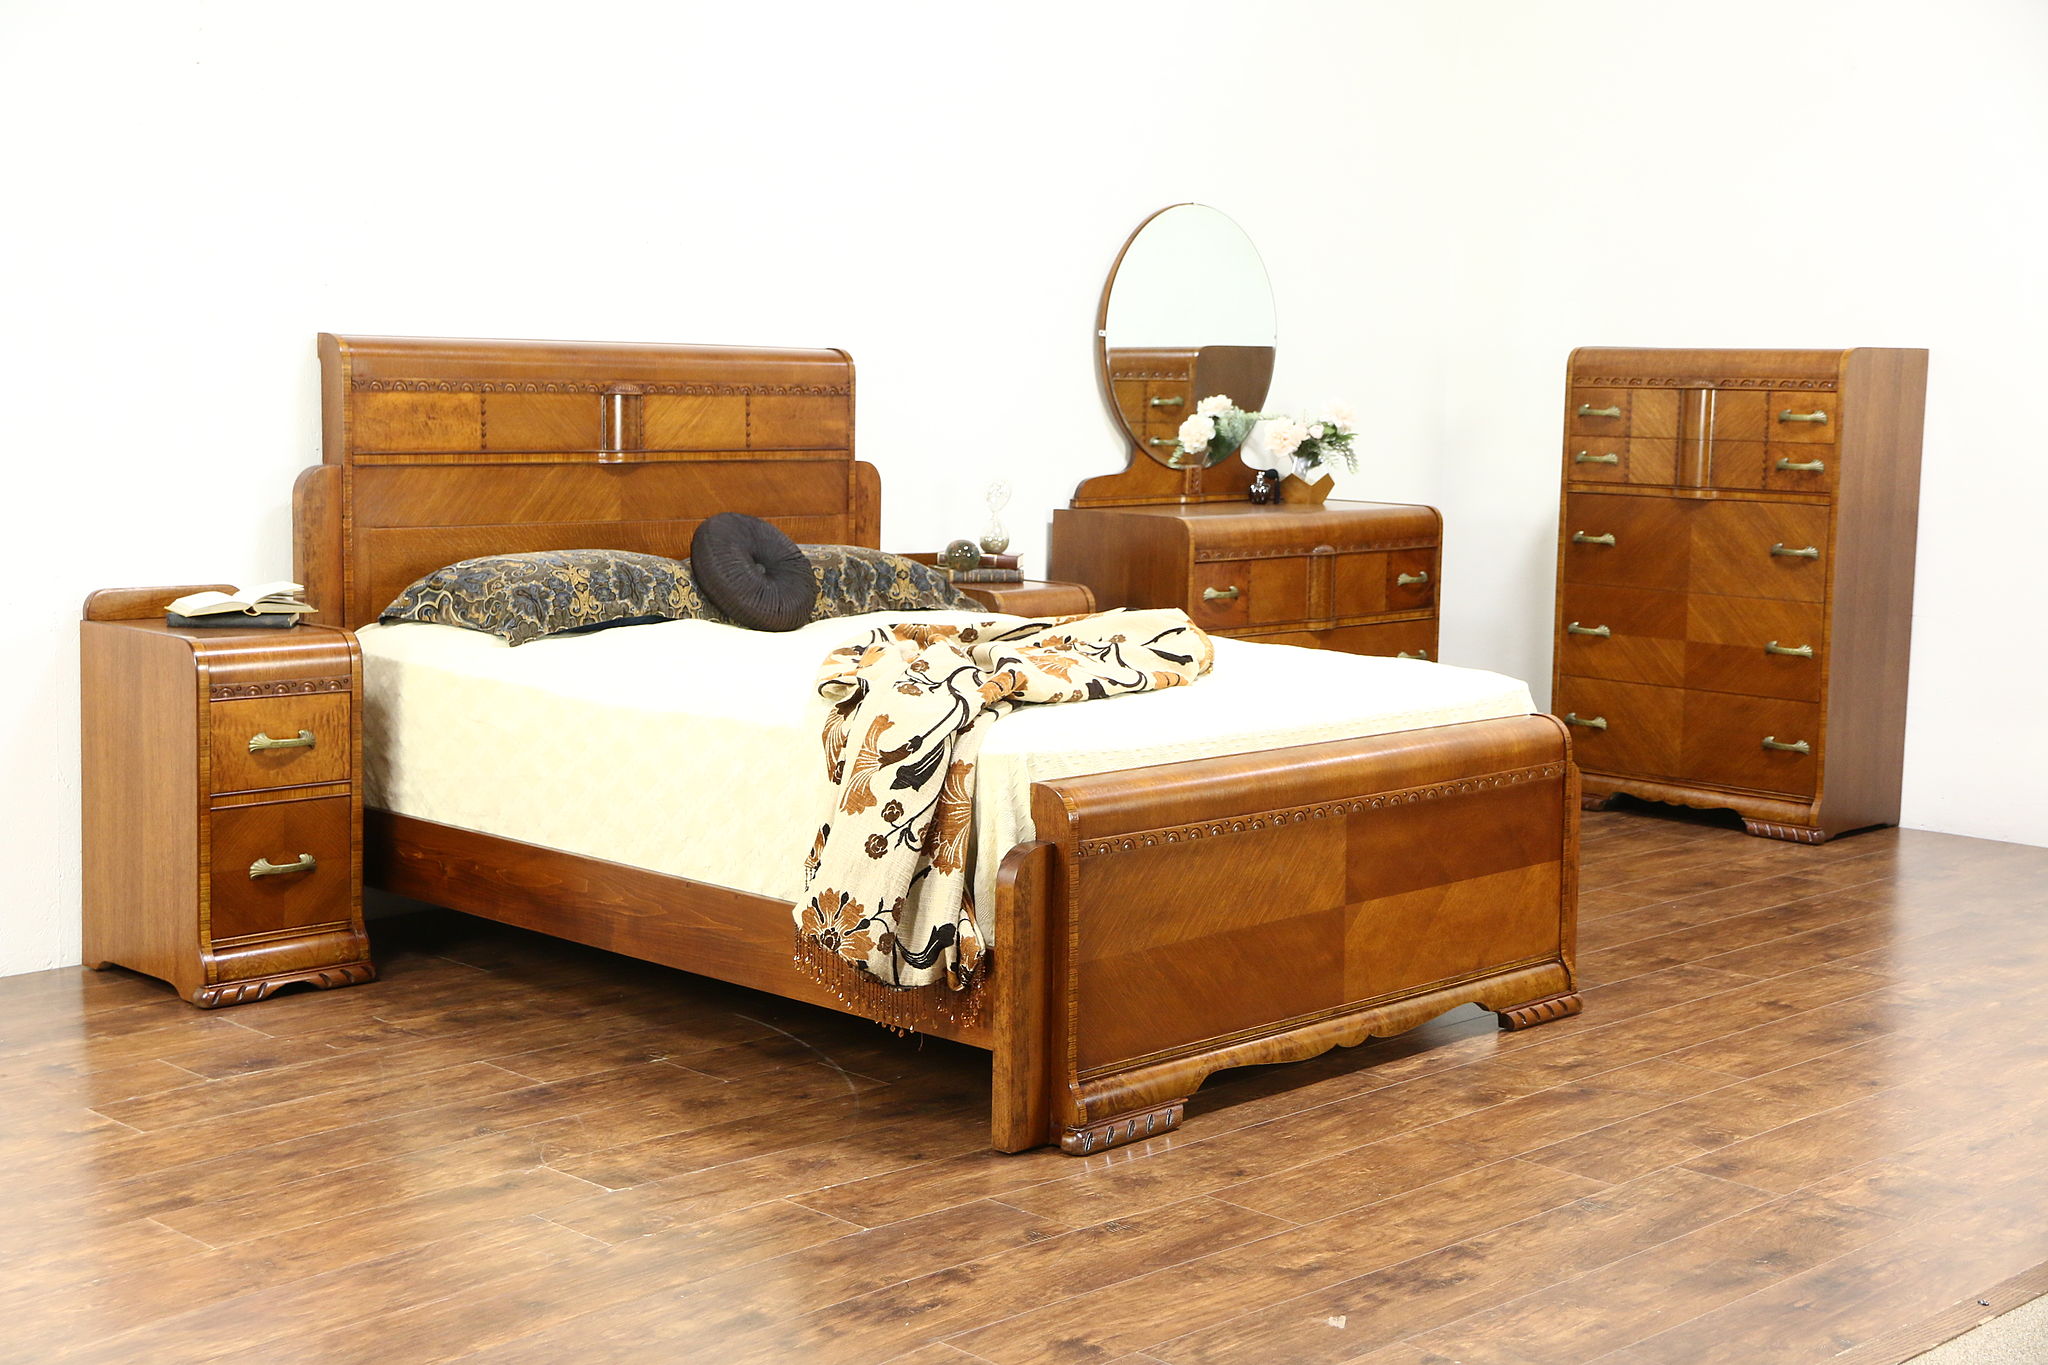 1950s art deco bedroom furniture